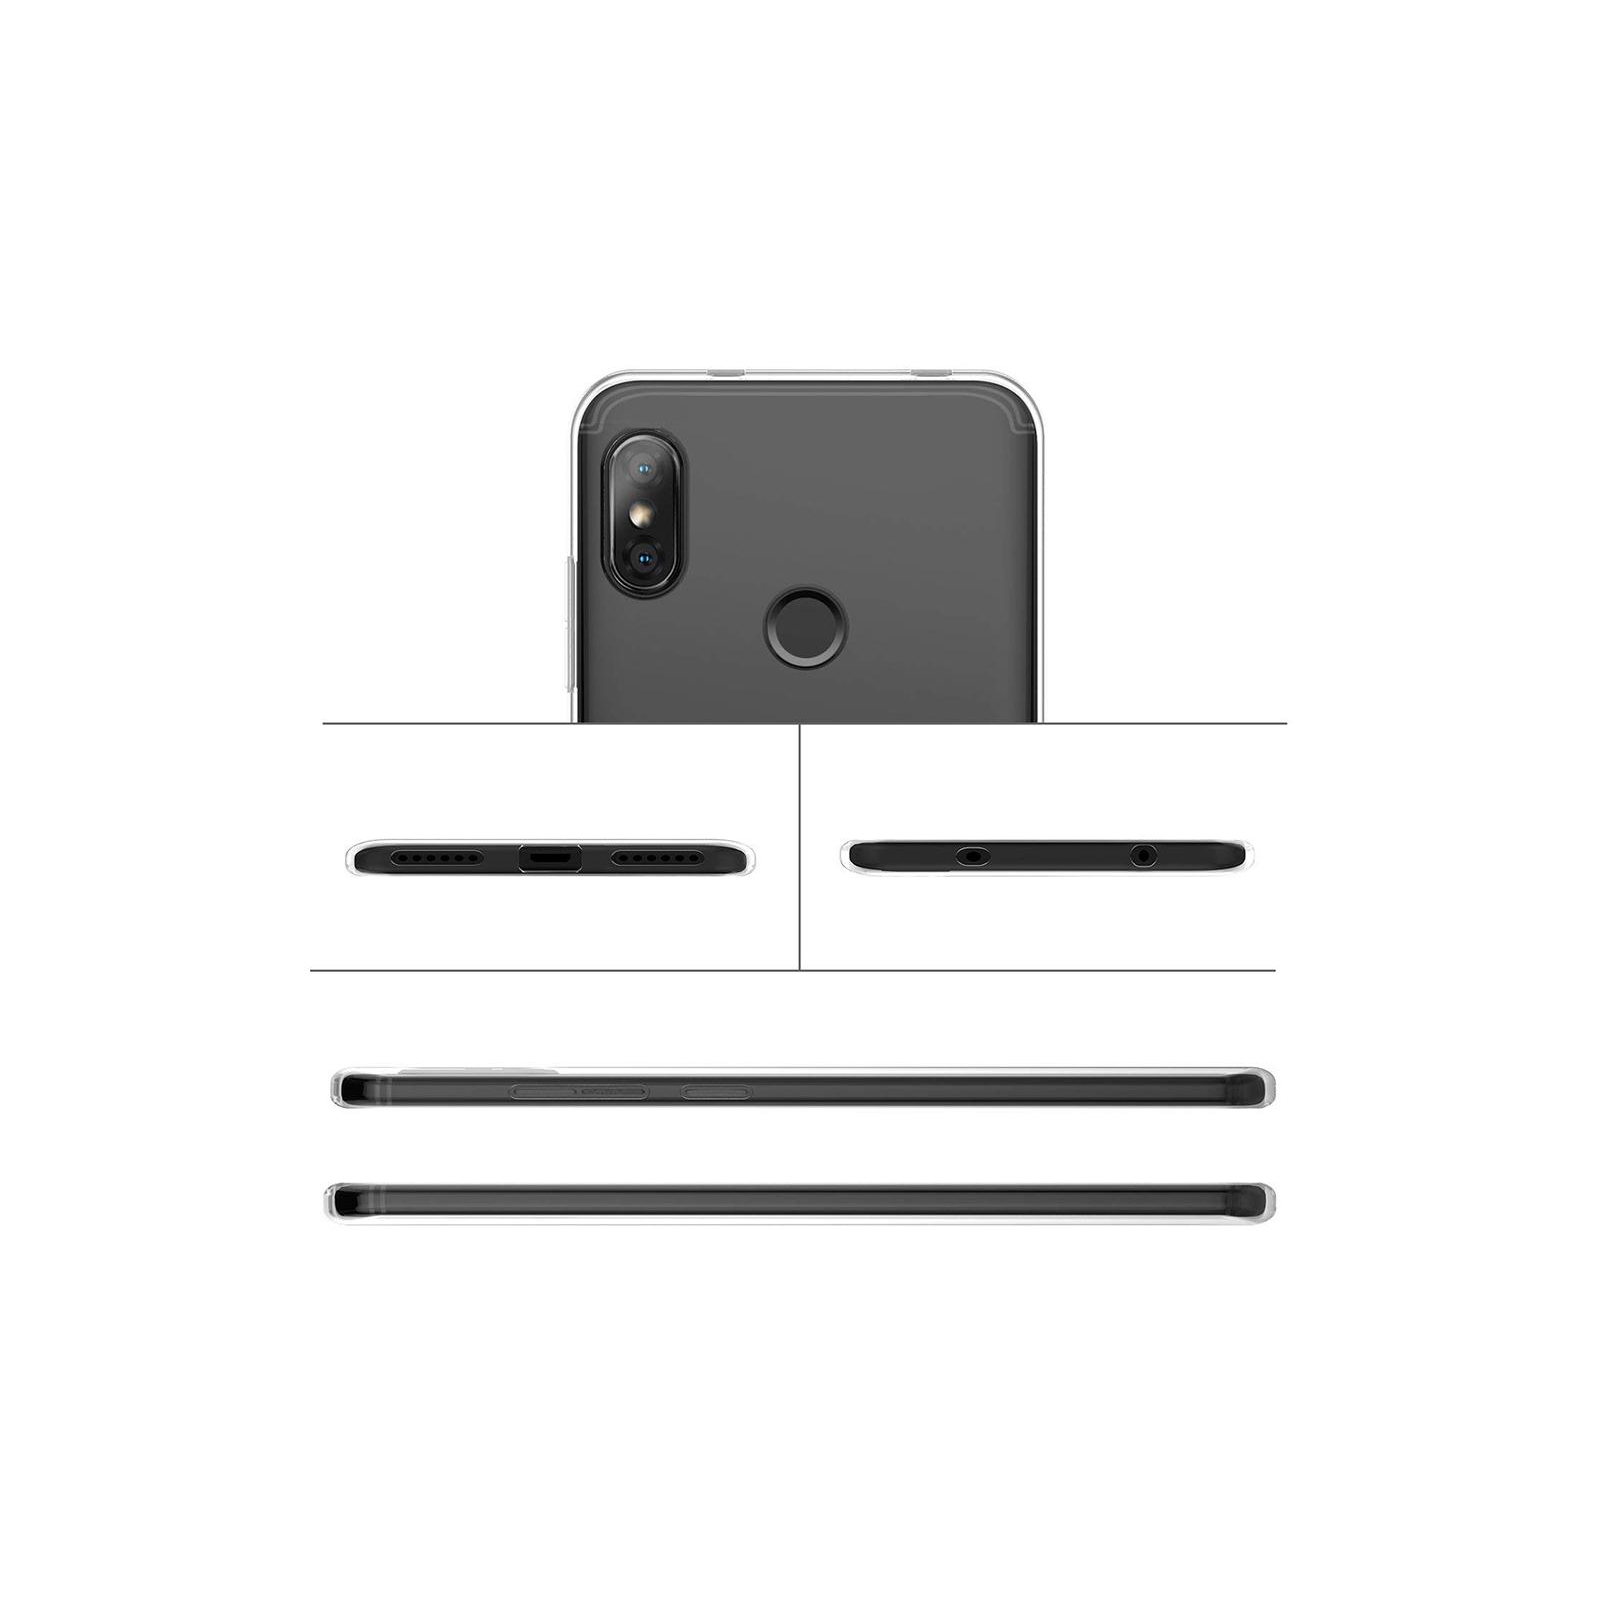 Чехол для мобильного телефона Laudtec для Xiaomi S2 Clear tpu (Transperent) (LC-S2) изображение 6